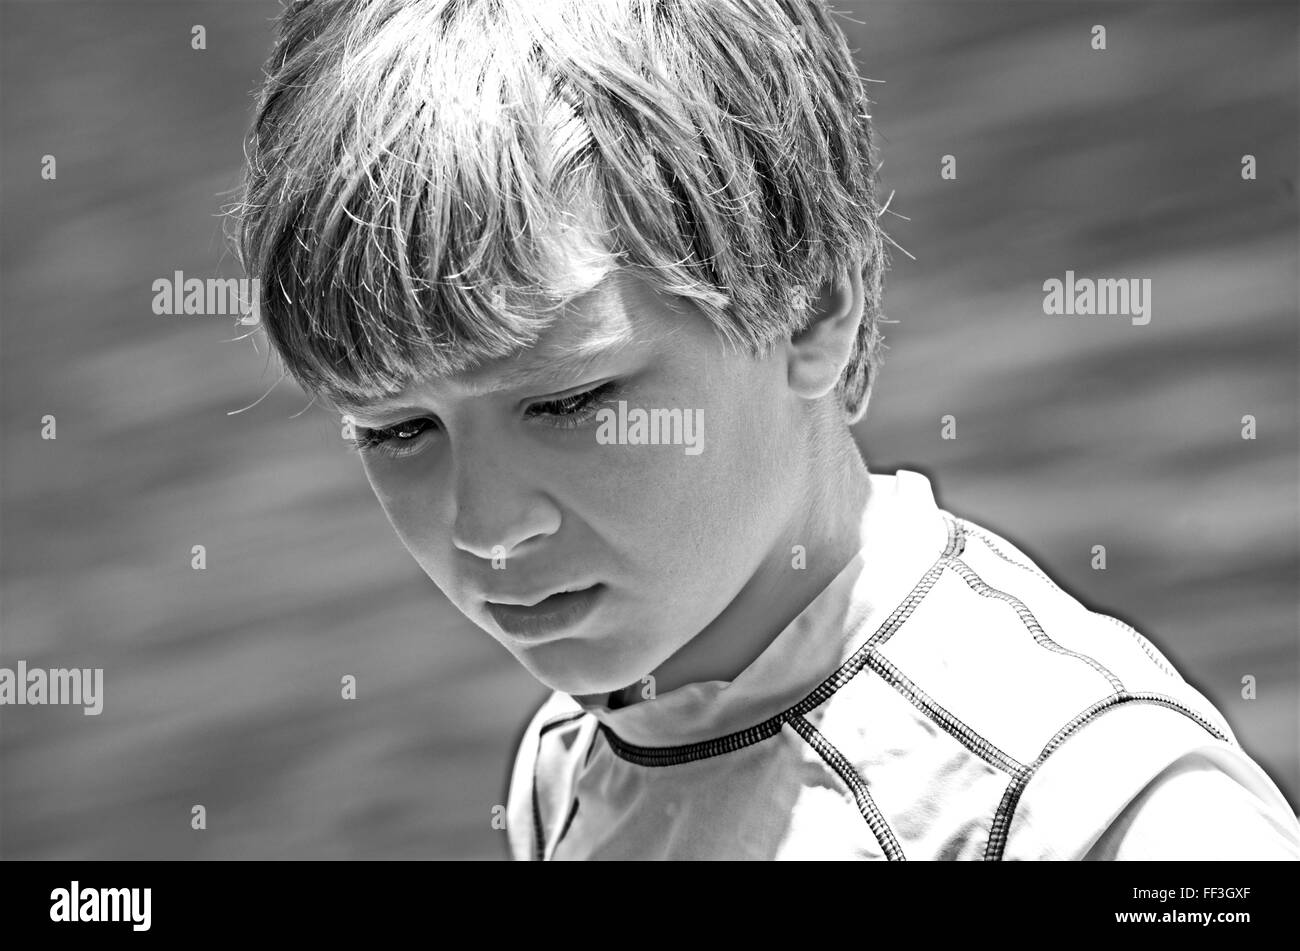 Ein kleiner Junge mit nachdenklichen Ausdruck in schwarz / weiß. Stockfoto